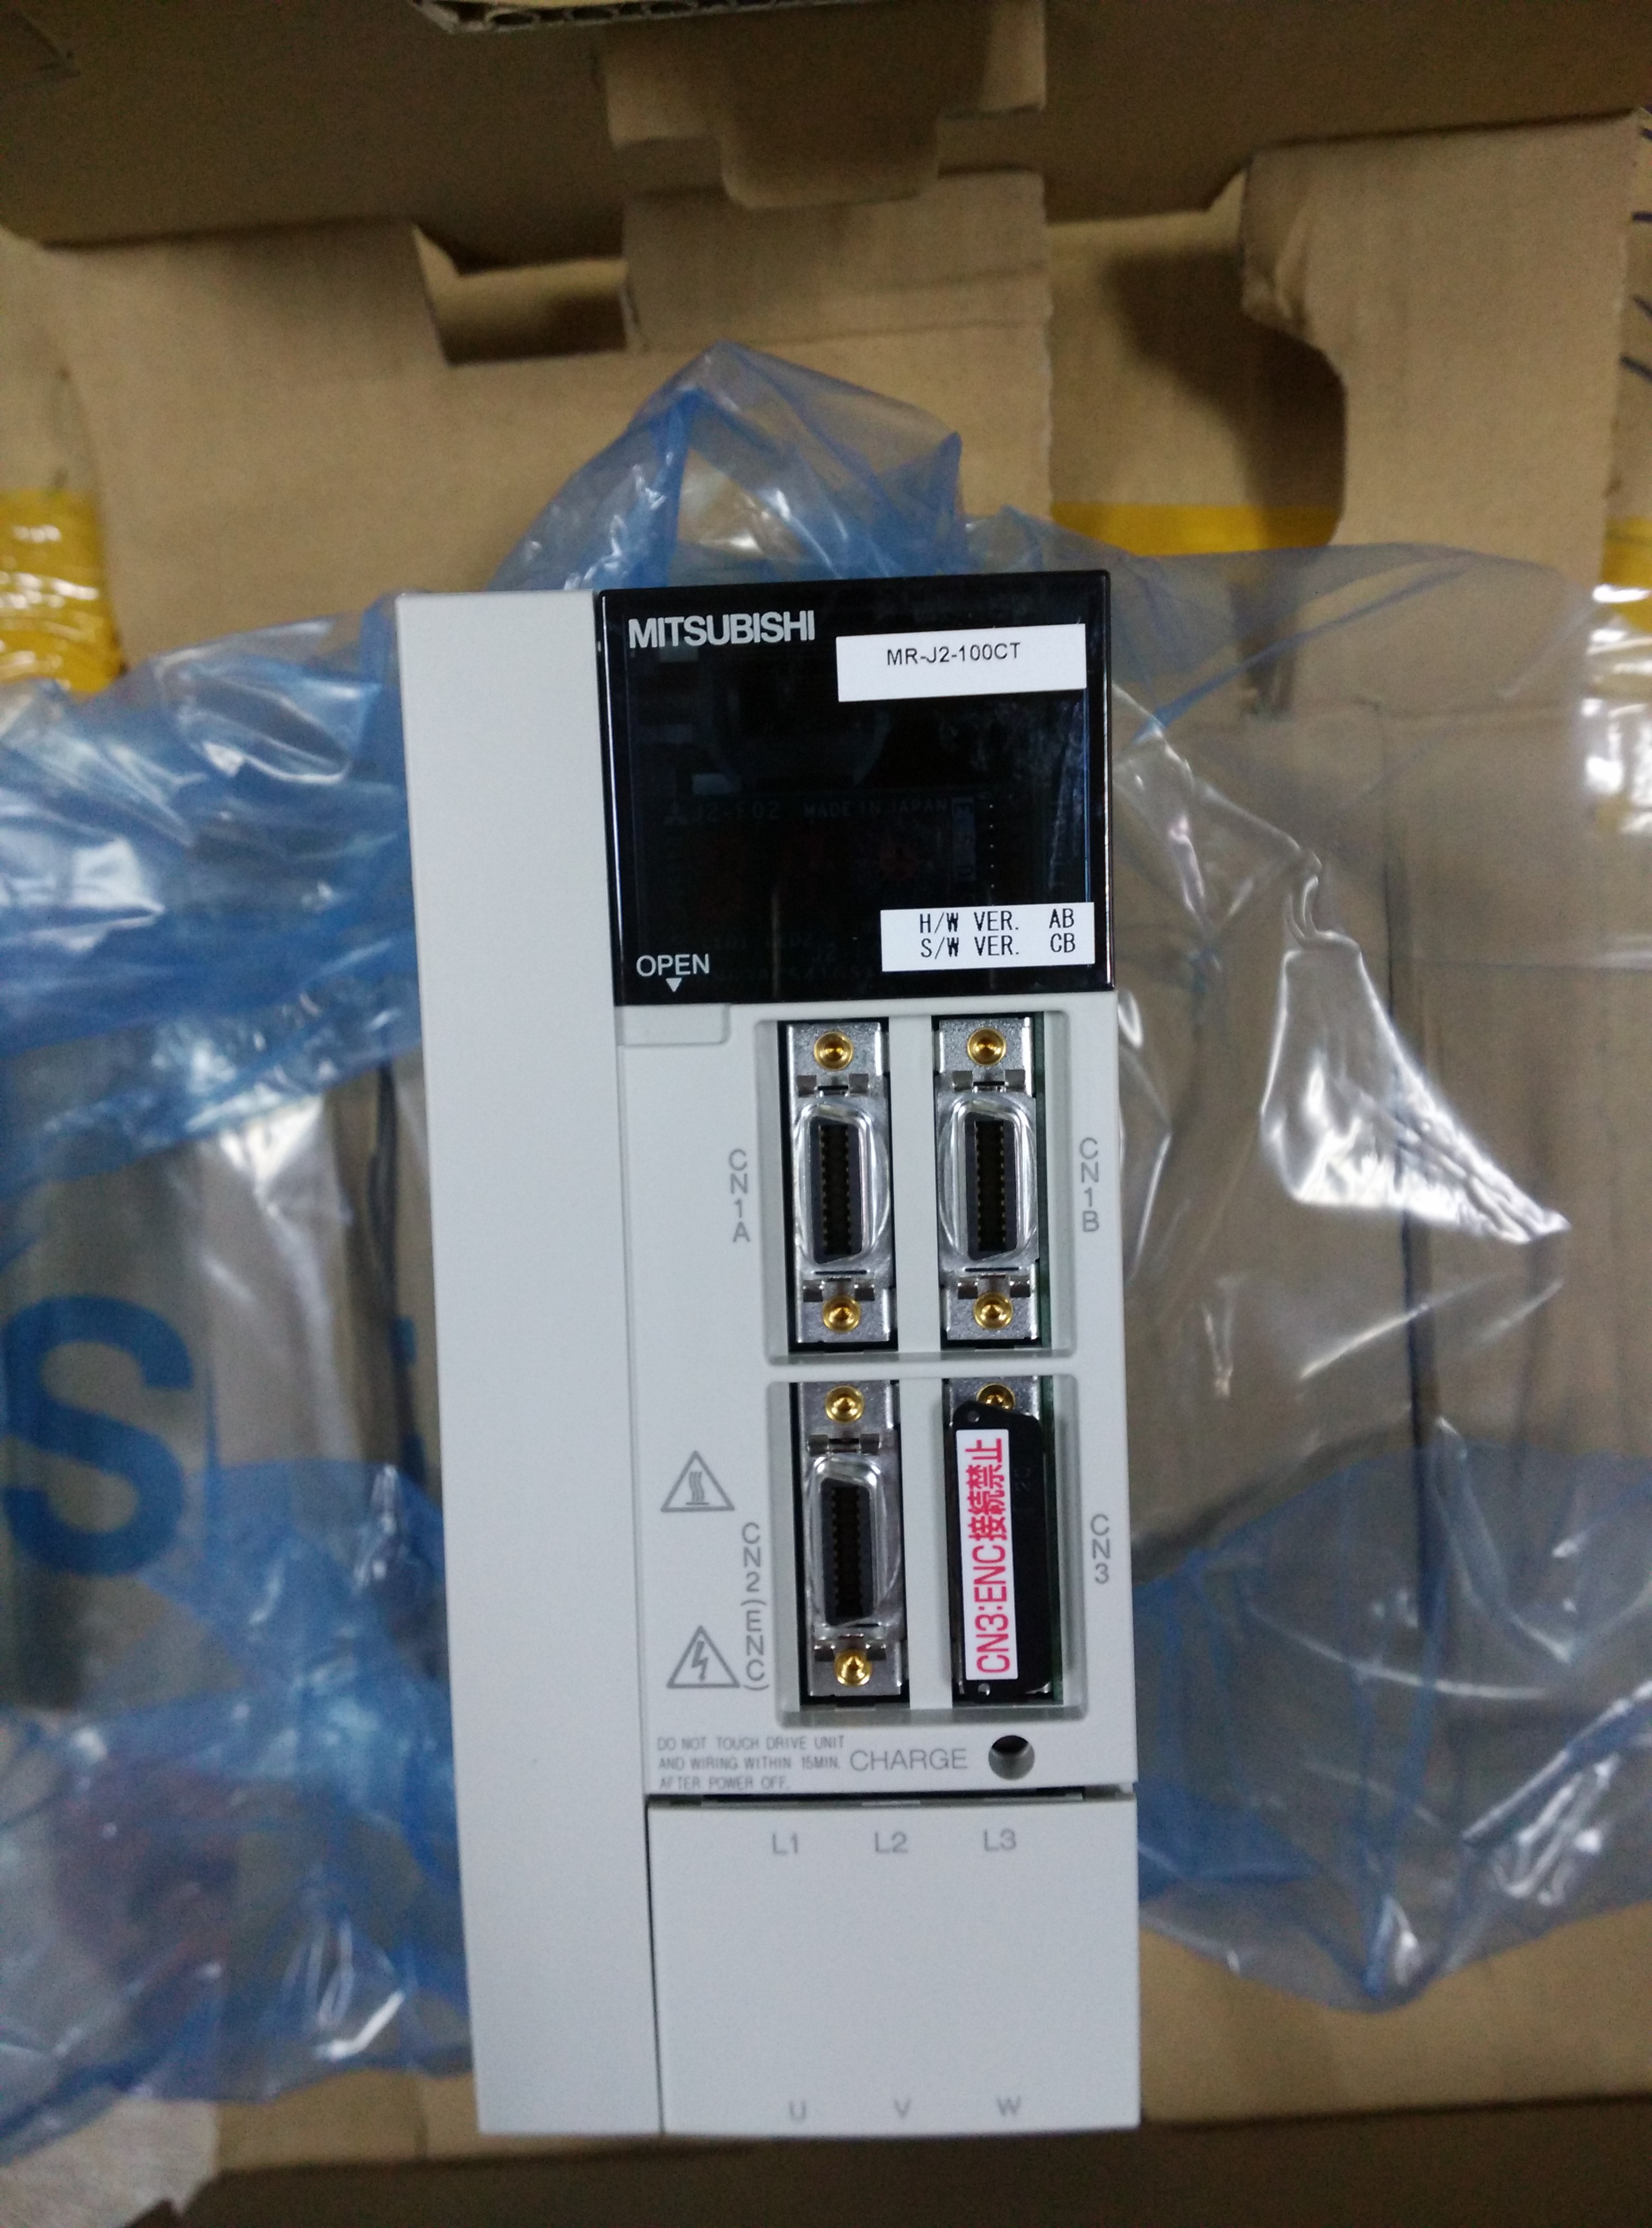 供应三菱数控伺服控制器 MR-J2-100CT 专业代理三菱数控系列产品图片